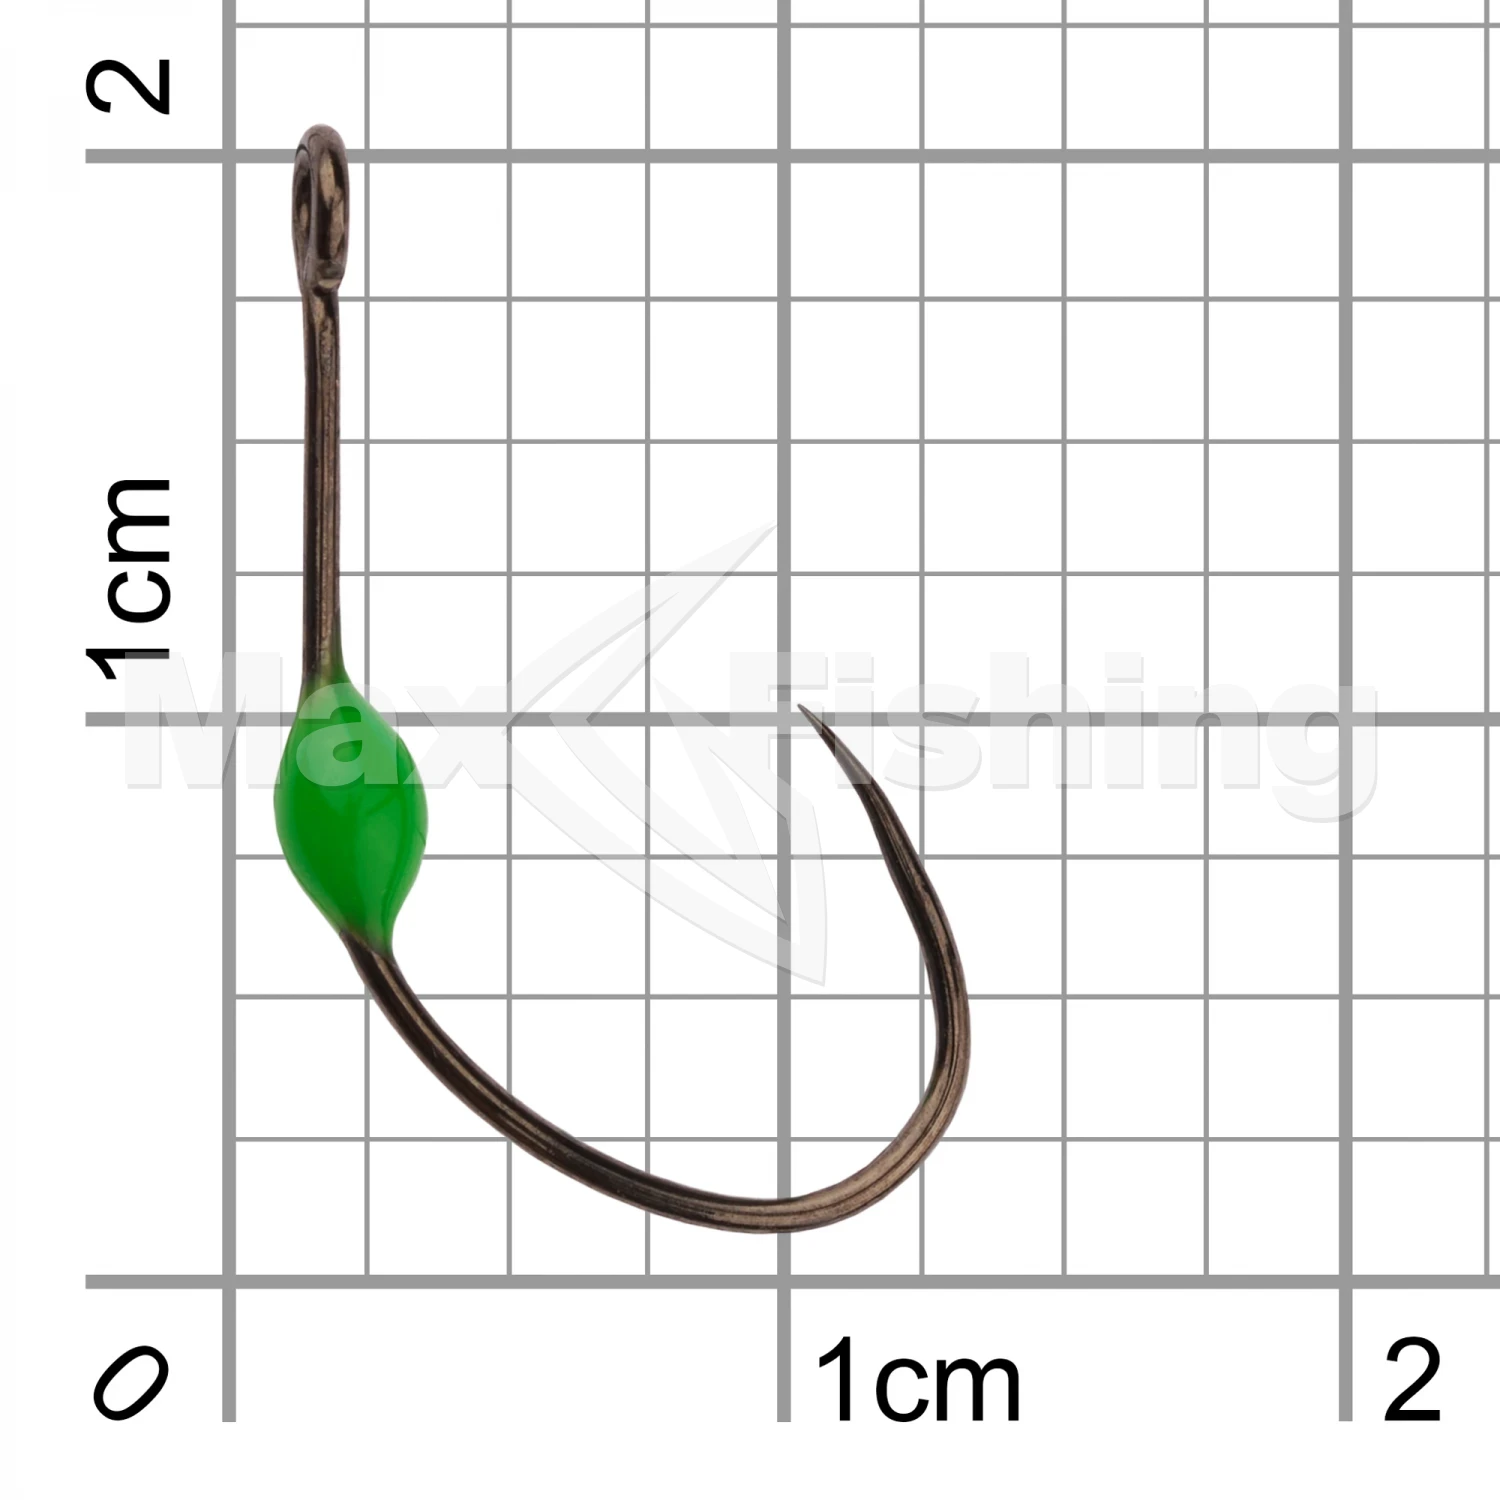 Крючок одинарный LureMax Trout LT37B Green #6 (10шт)